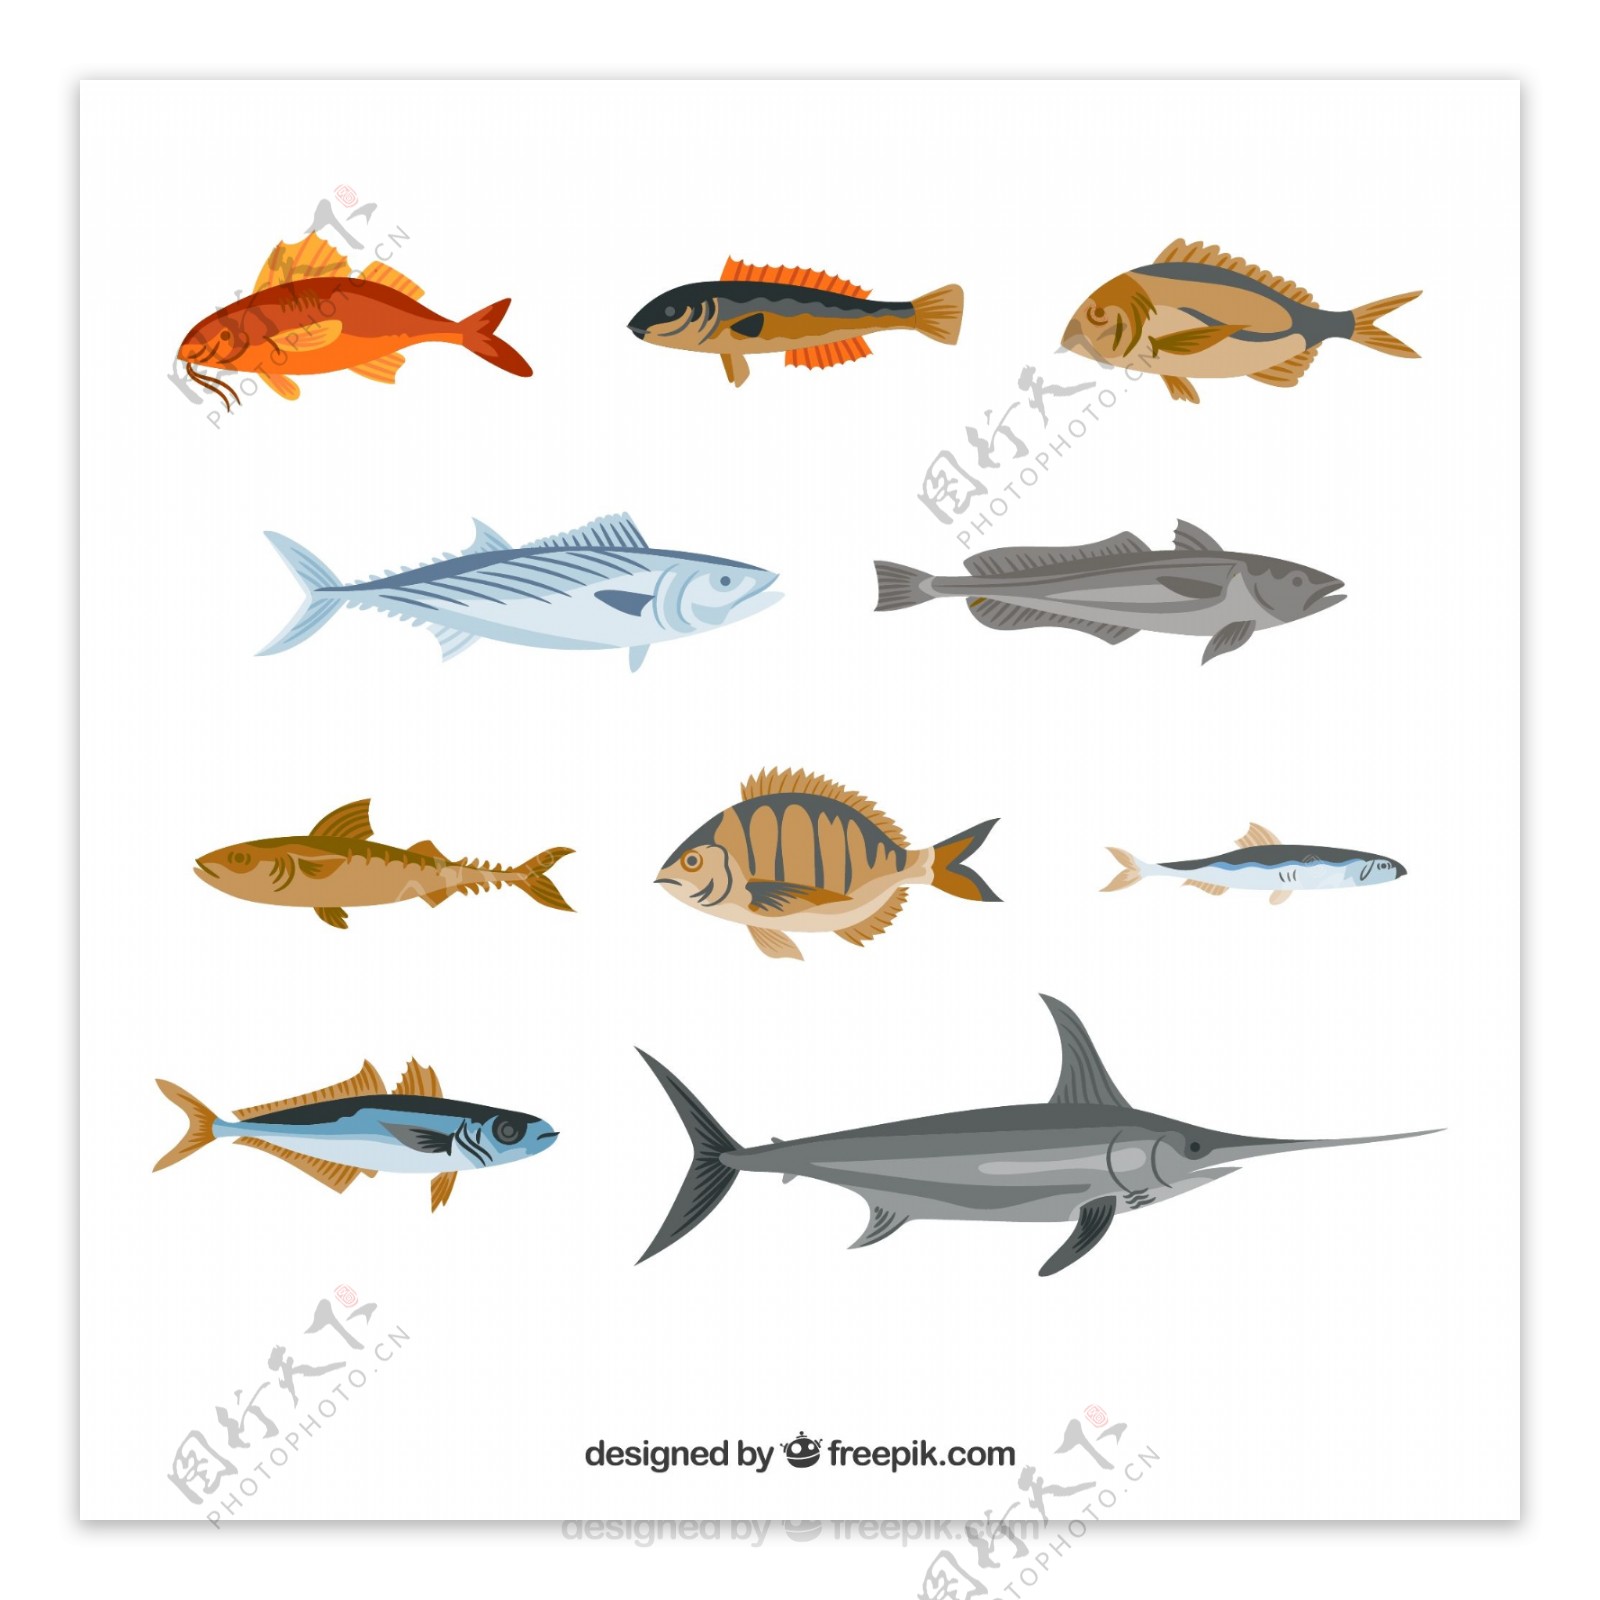 10款彩绘逼真鱼类设计